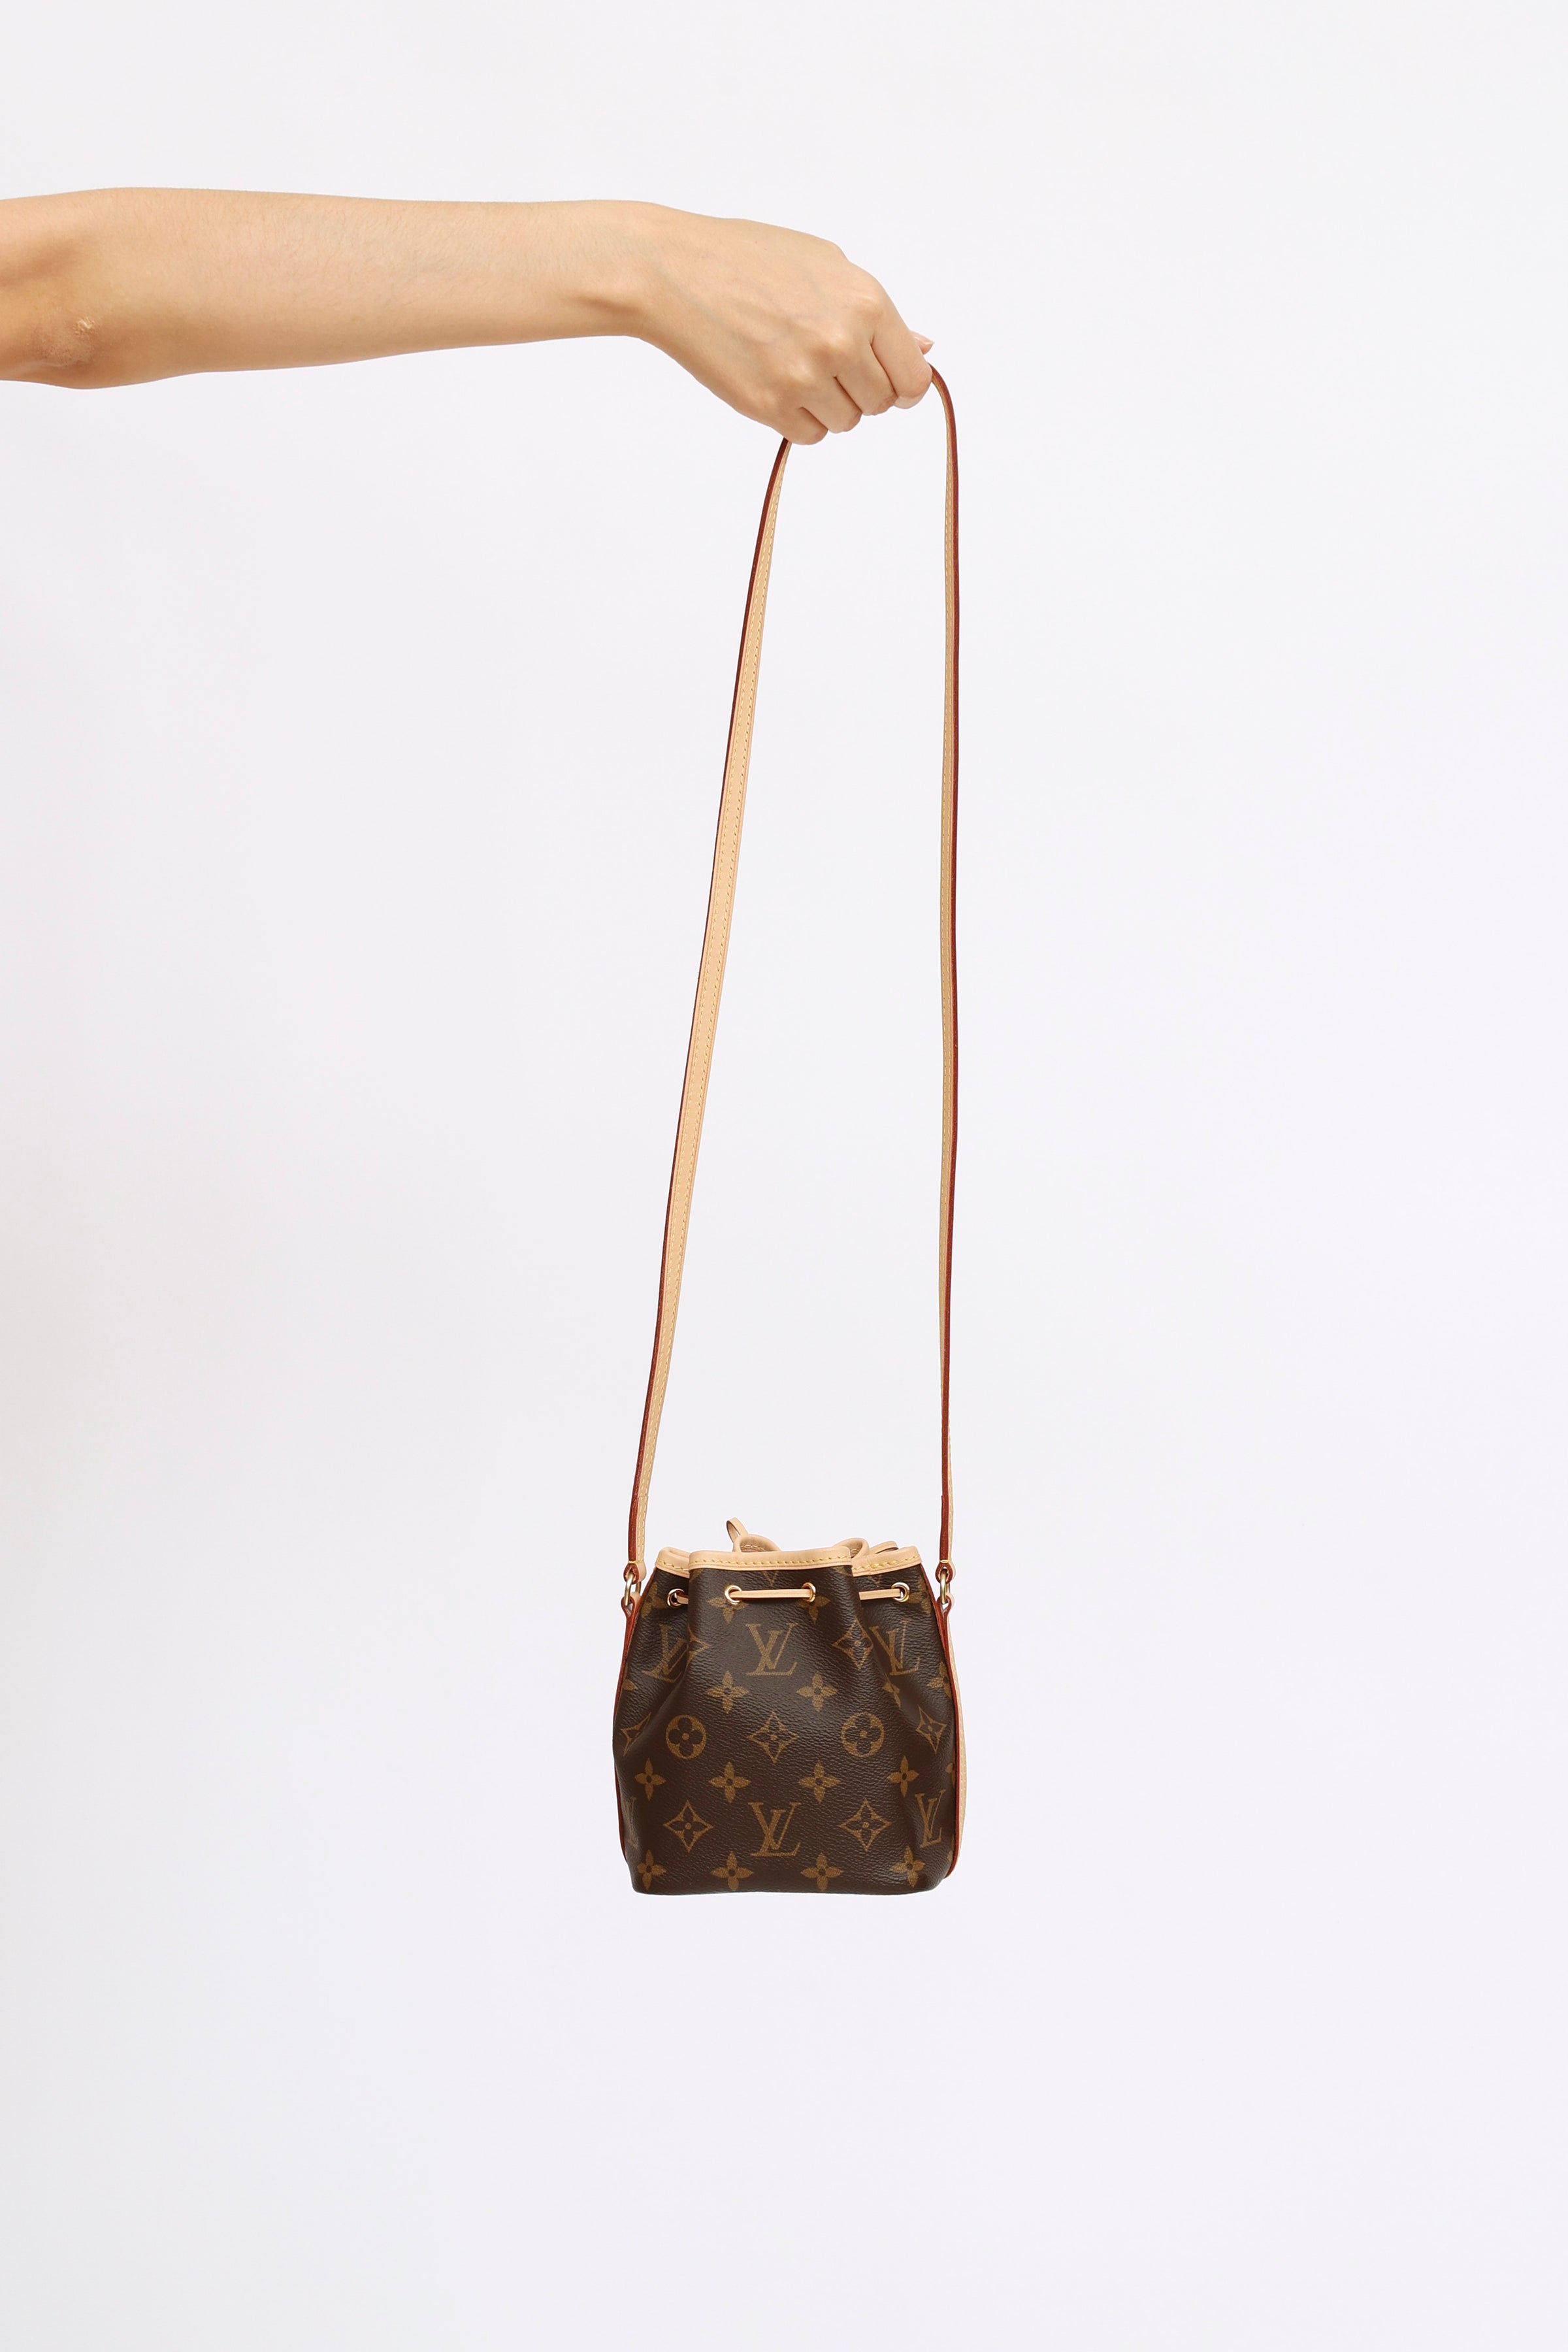 Louis Vuitton Nano Bucket, Brown, One Size